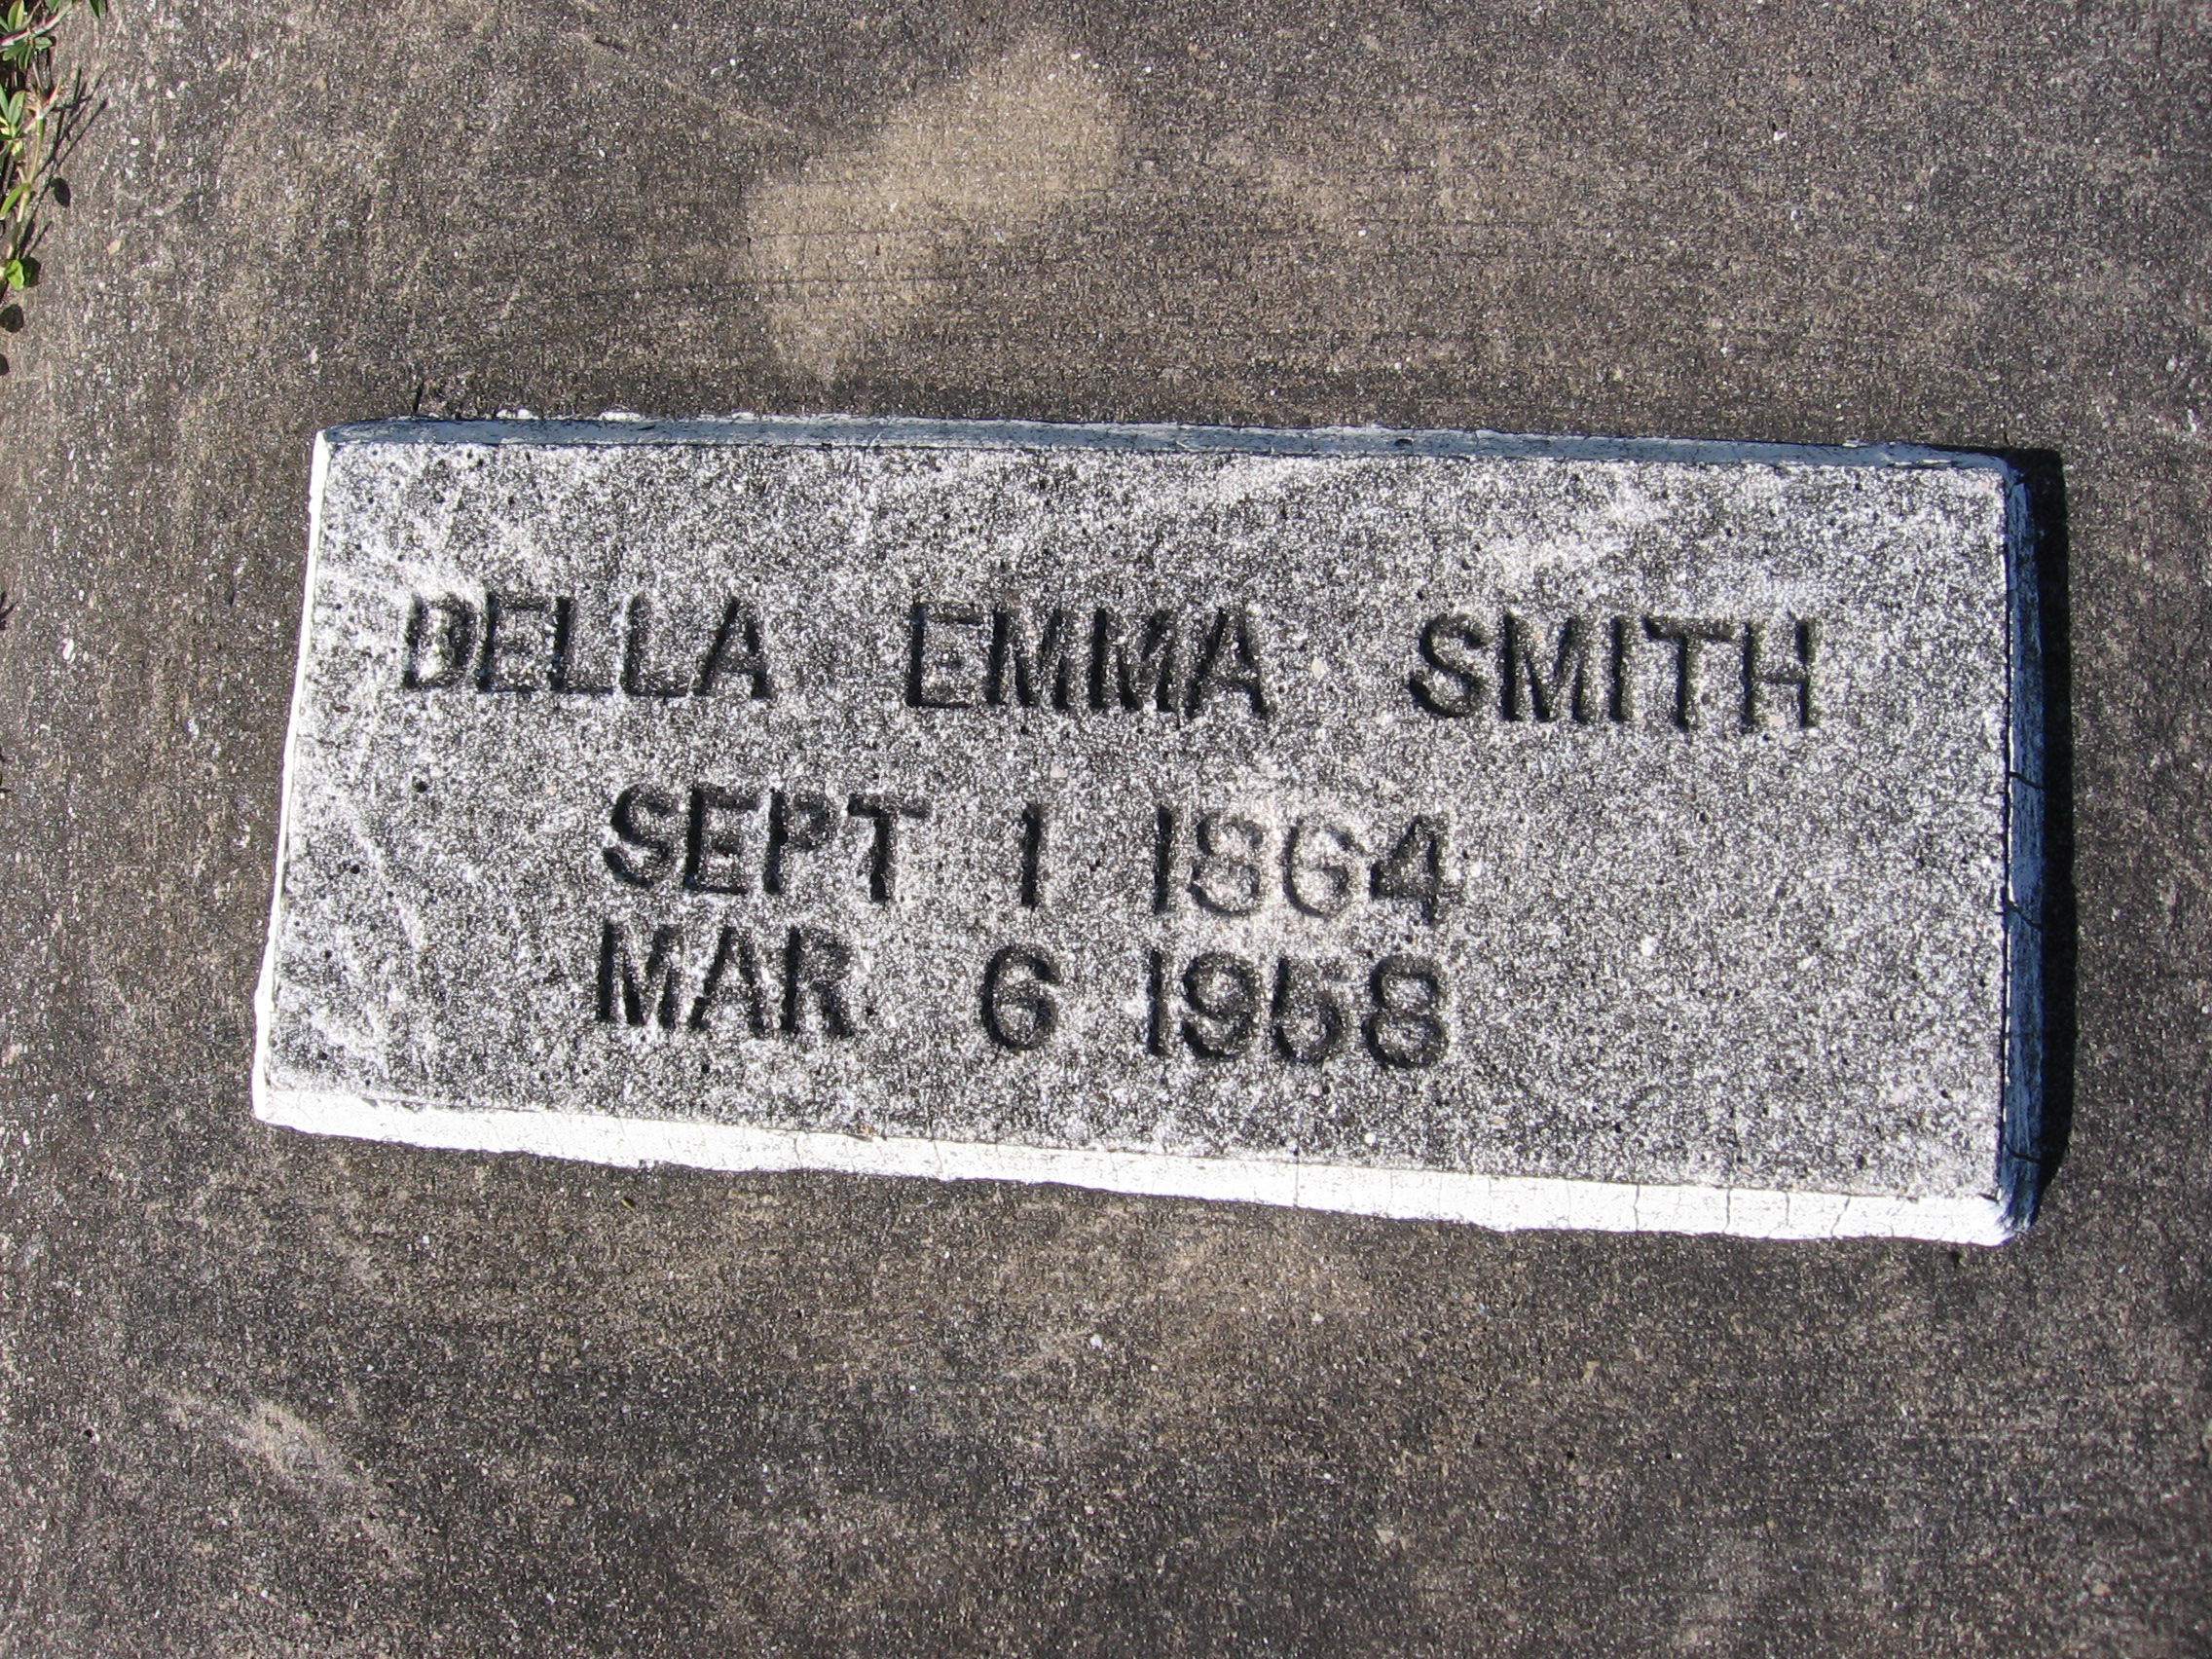 Della Emma Smith